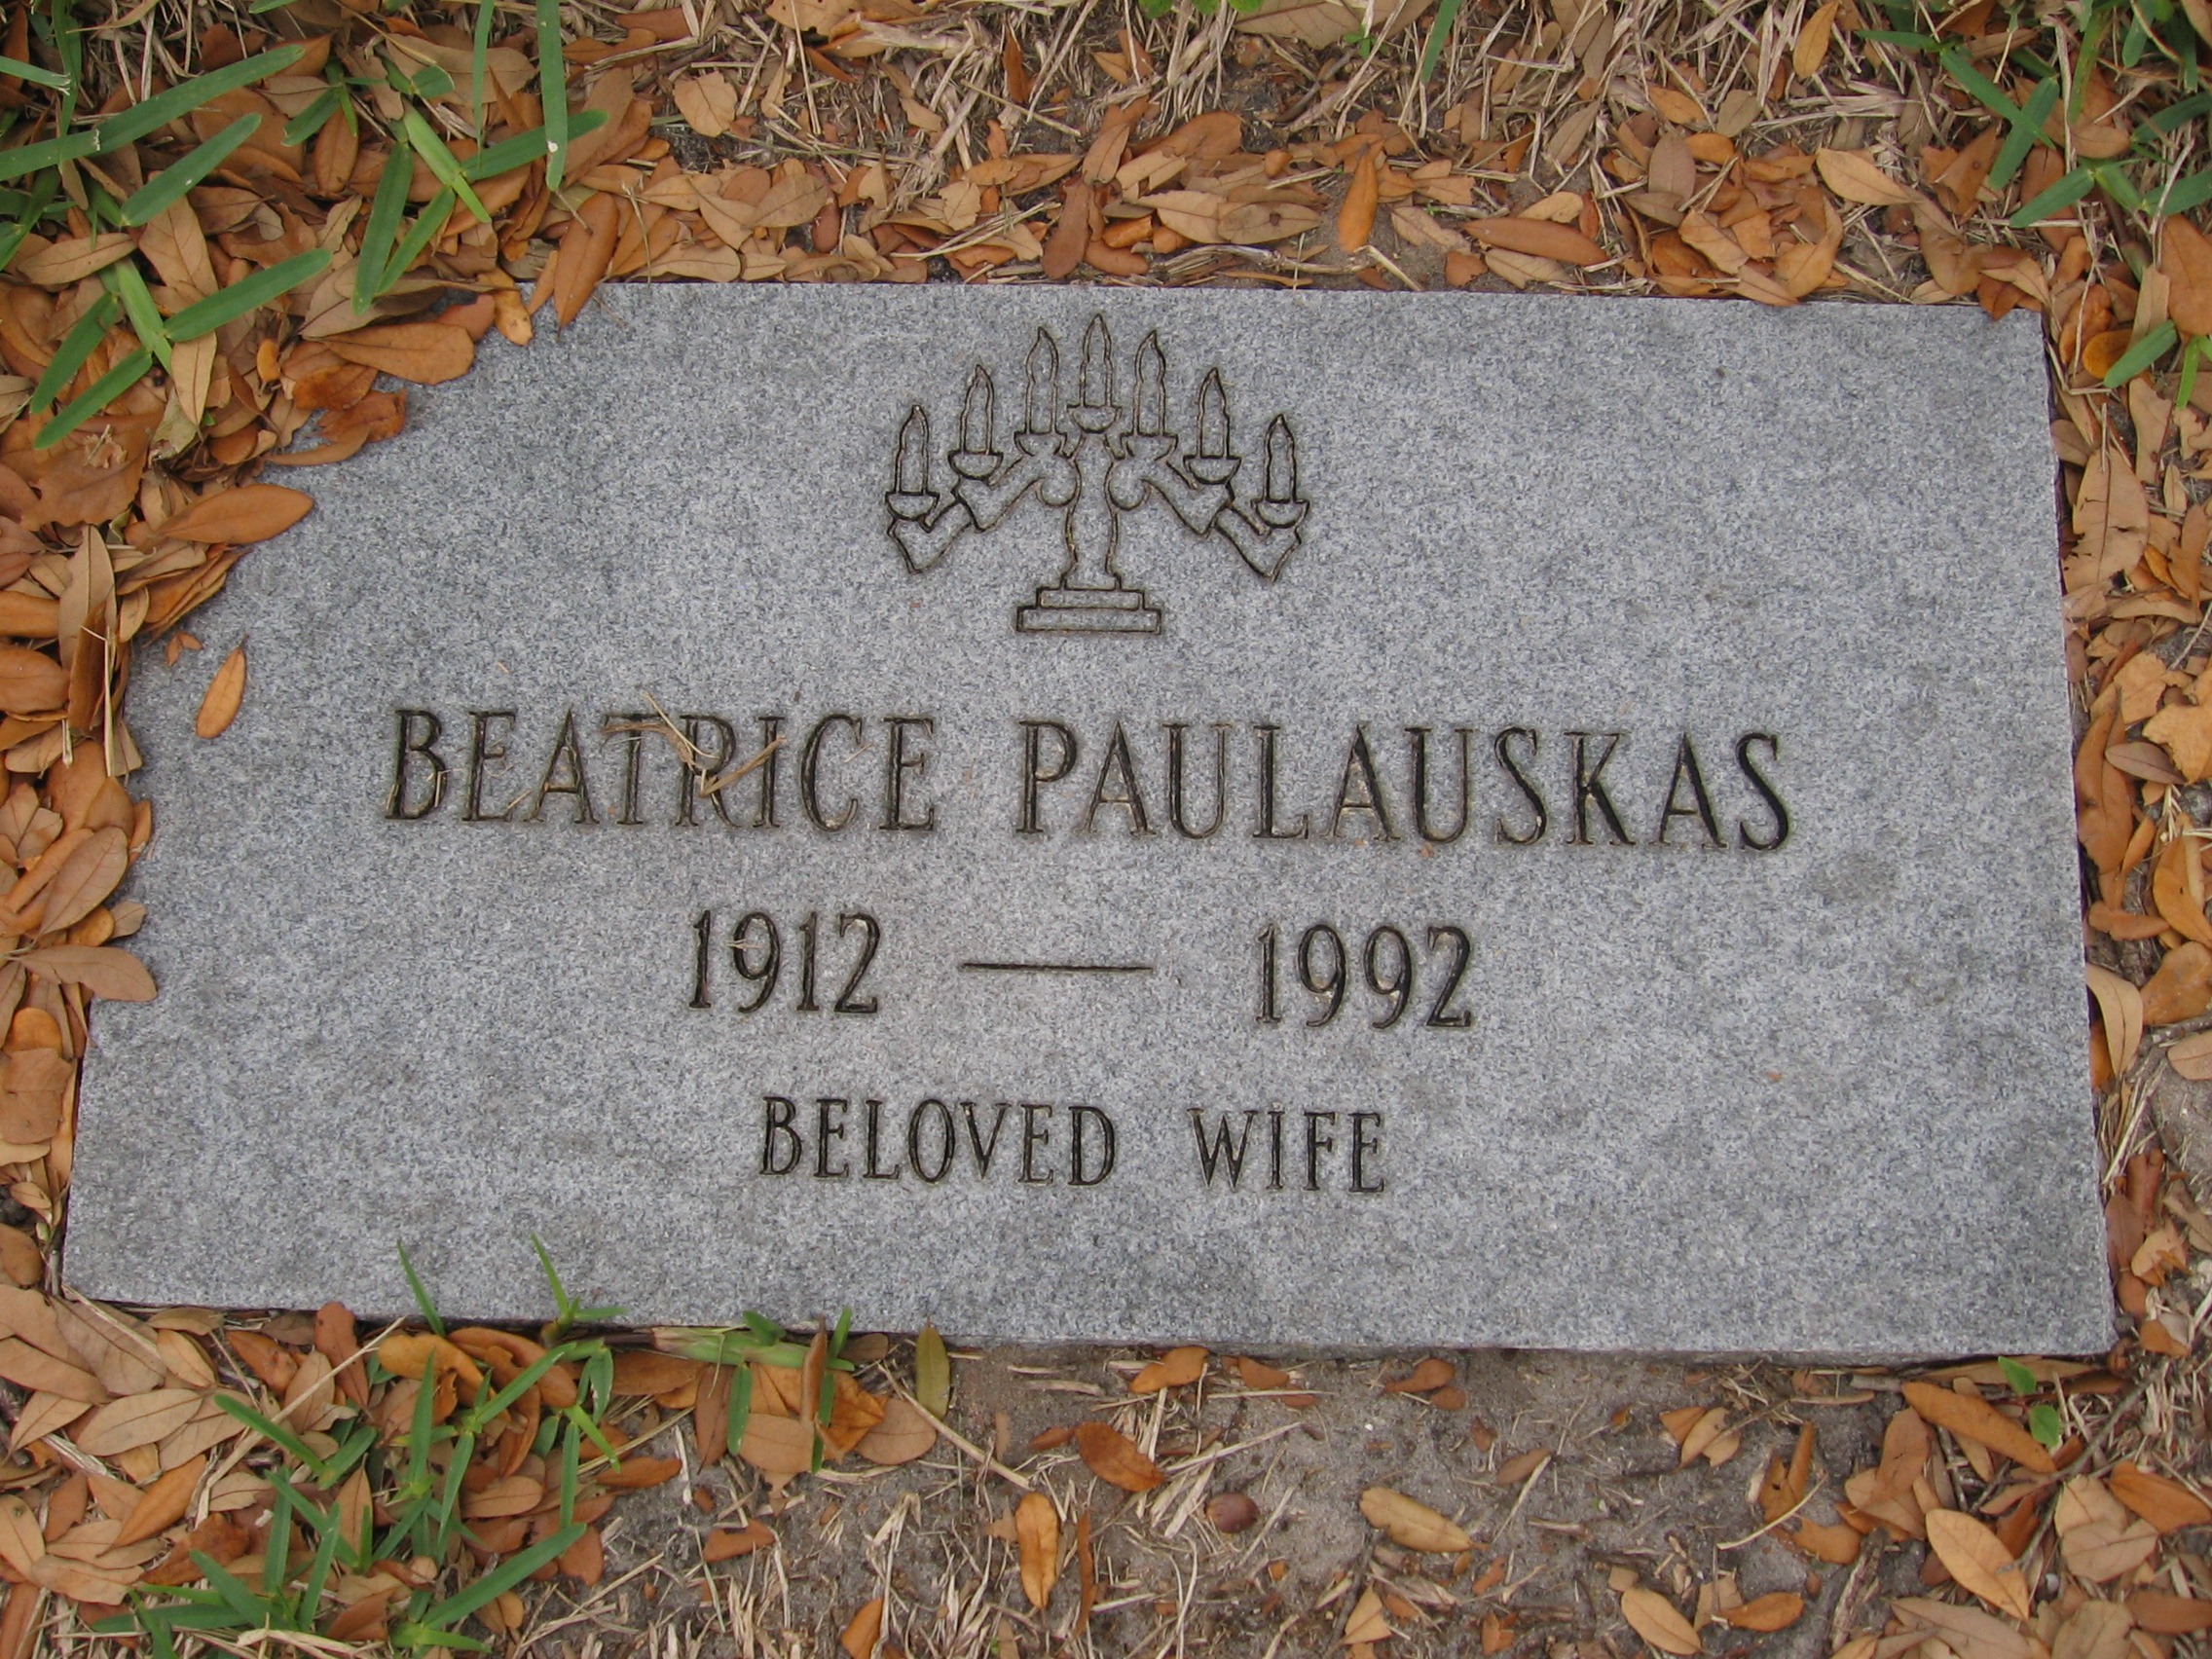 Beatrice Paulauskas